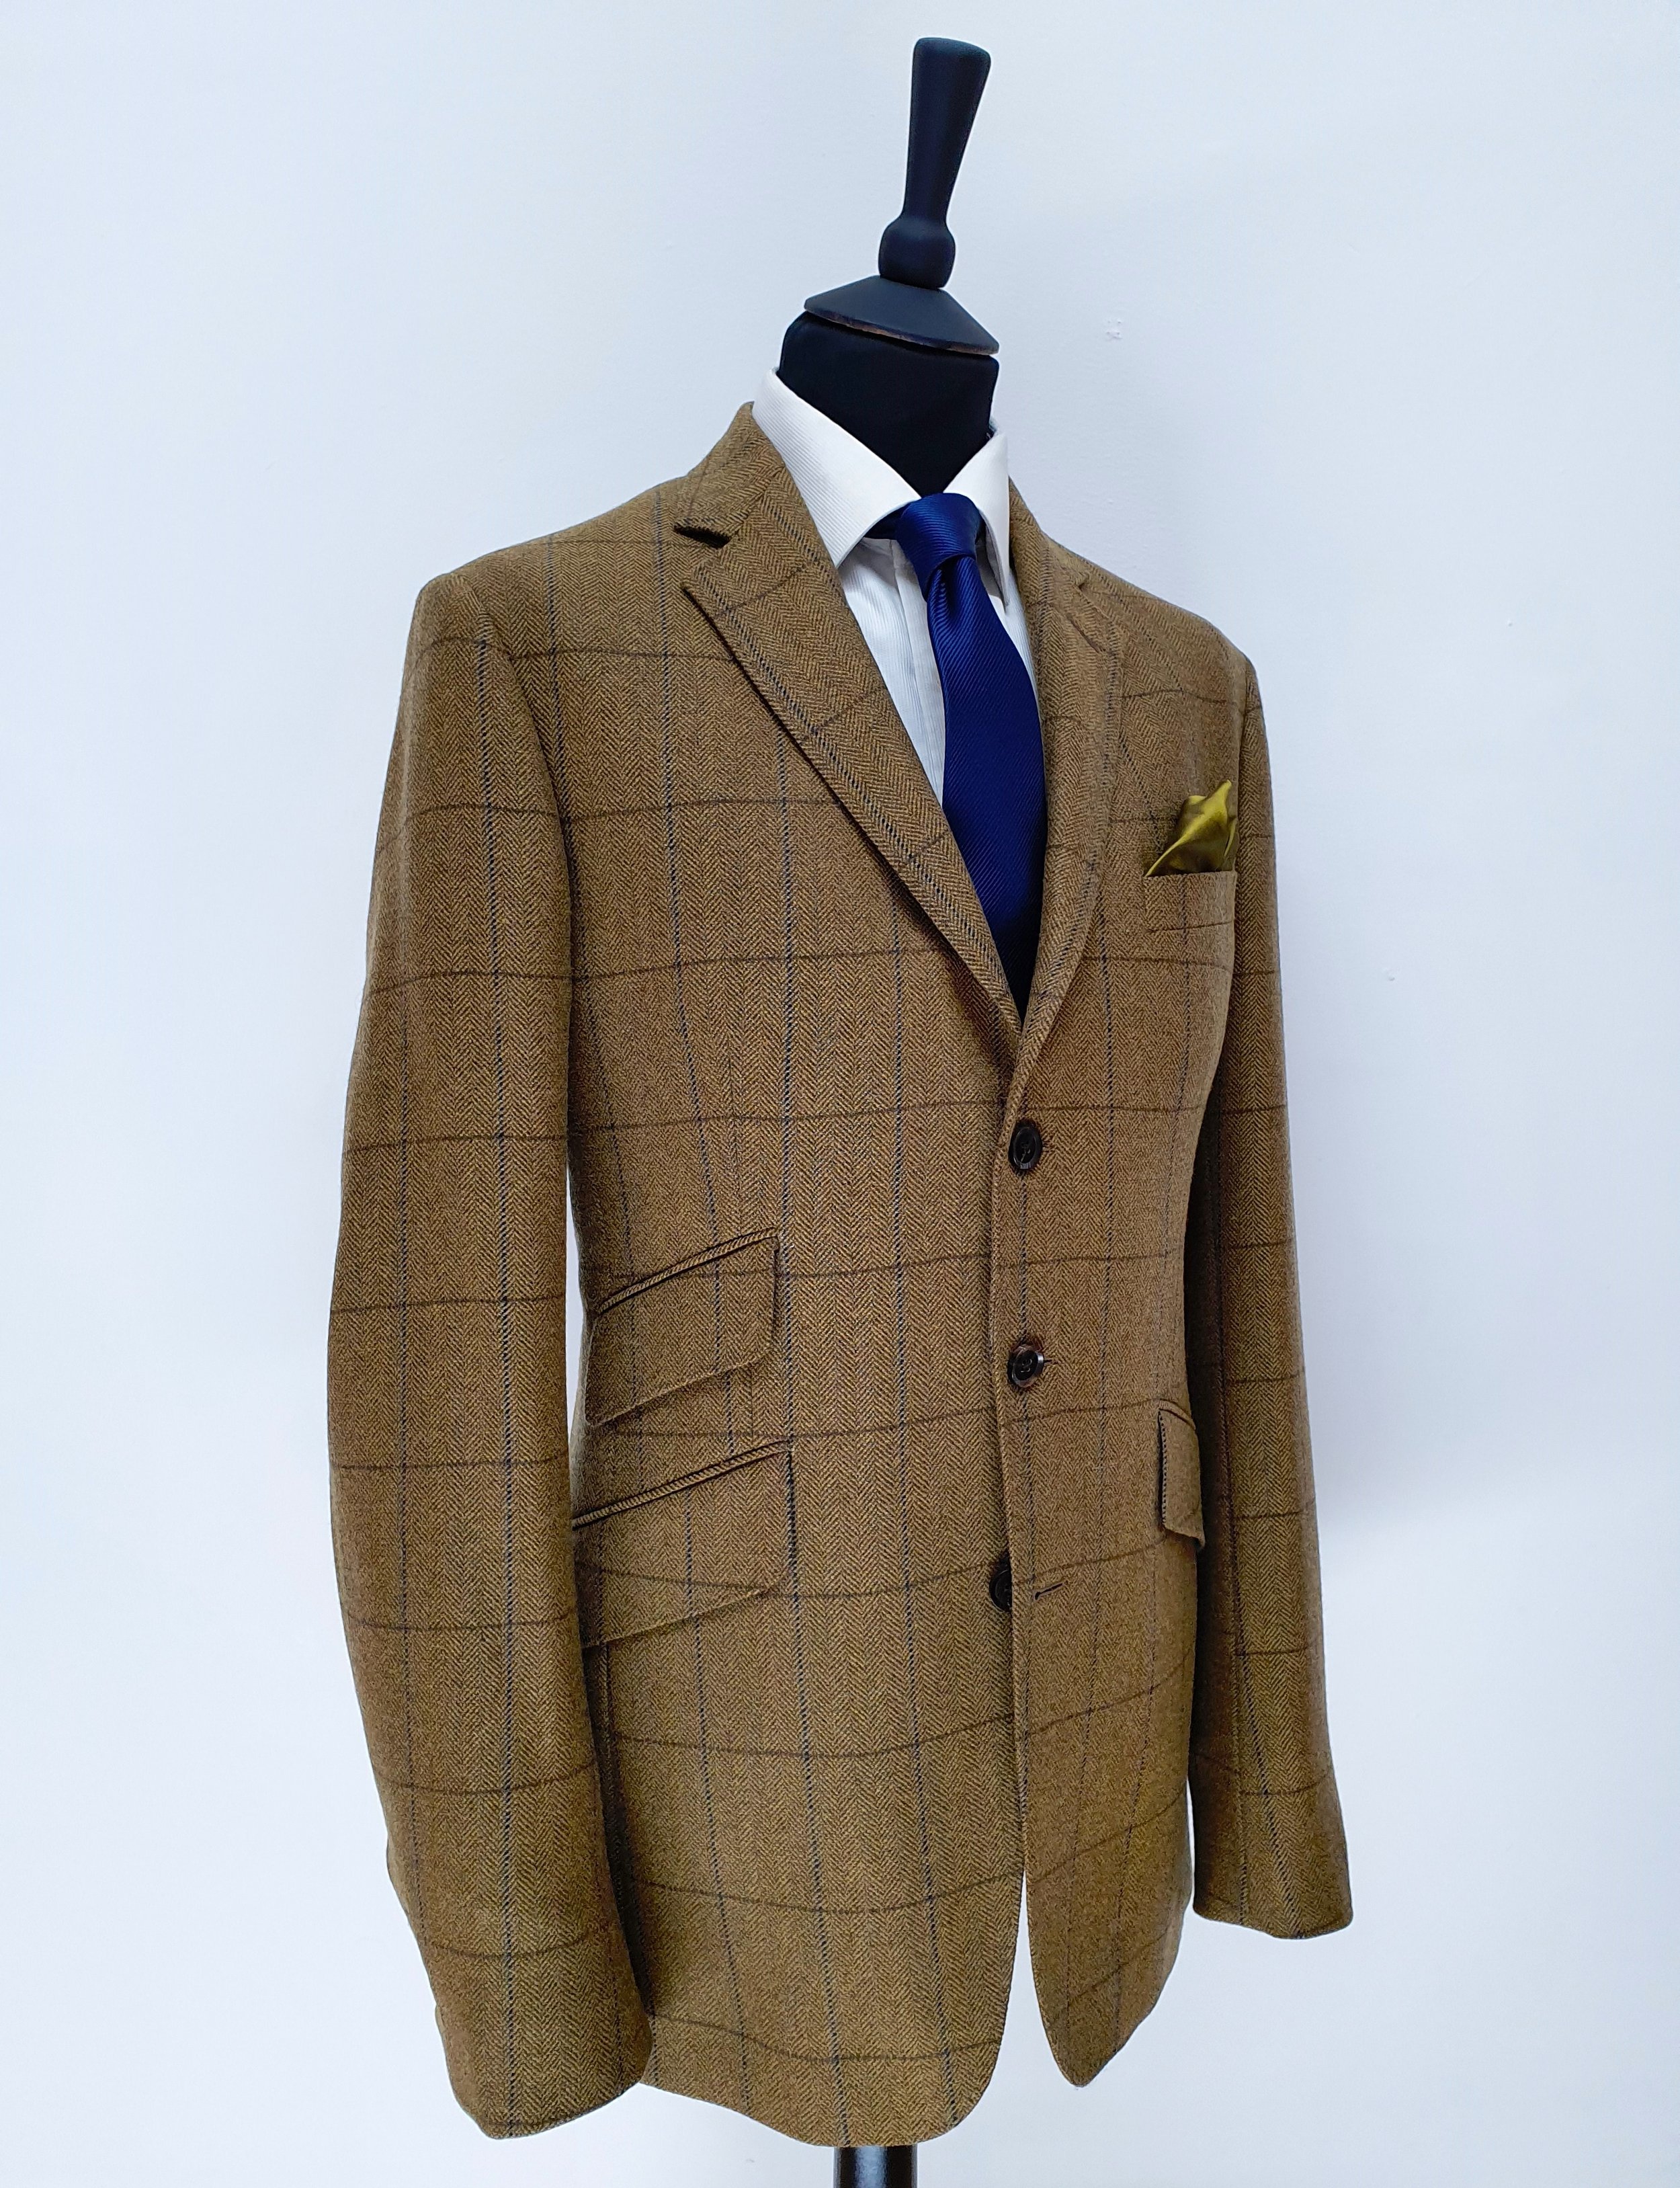 2 Piece suit in porter and harding Glenroyal tweed (6).jpg